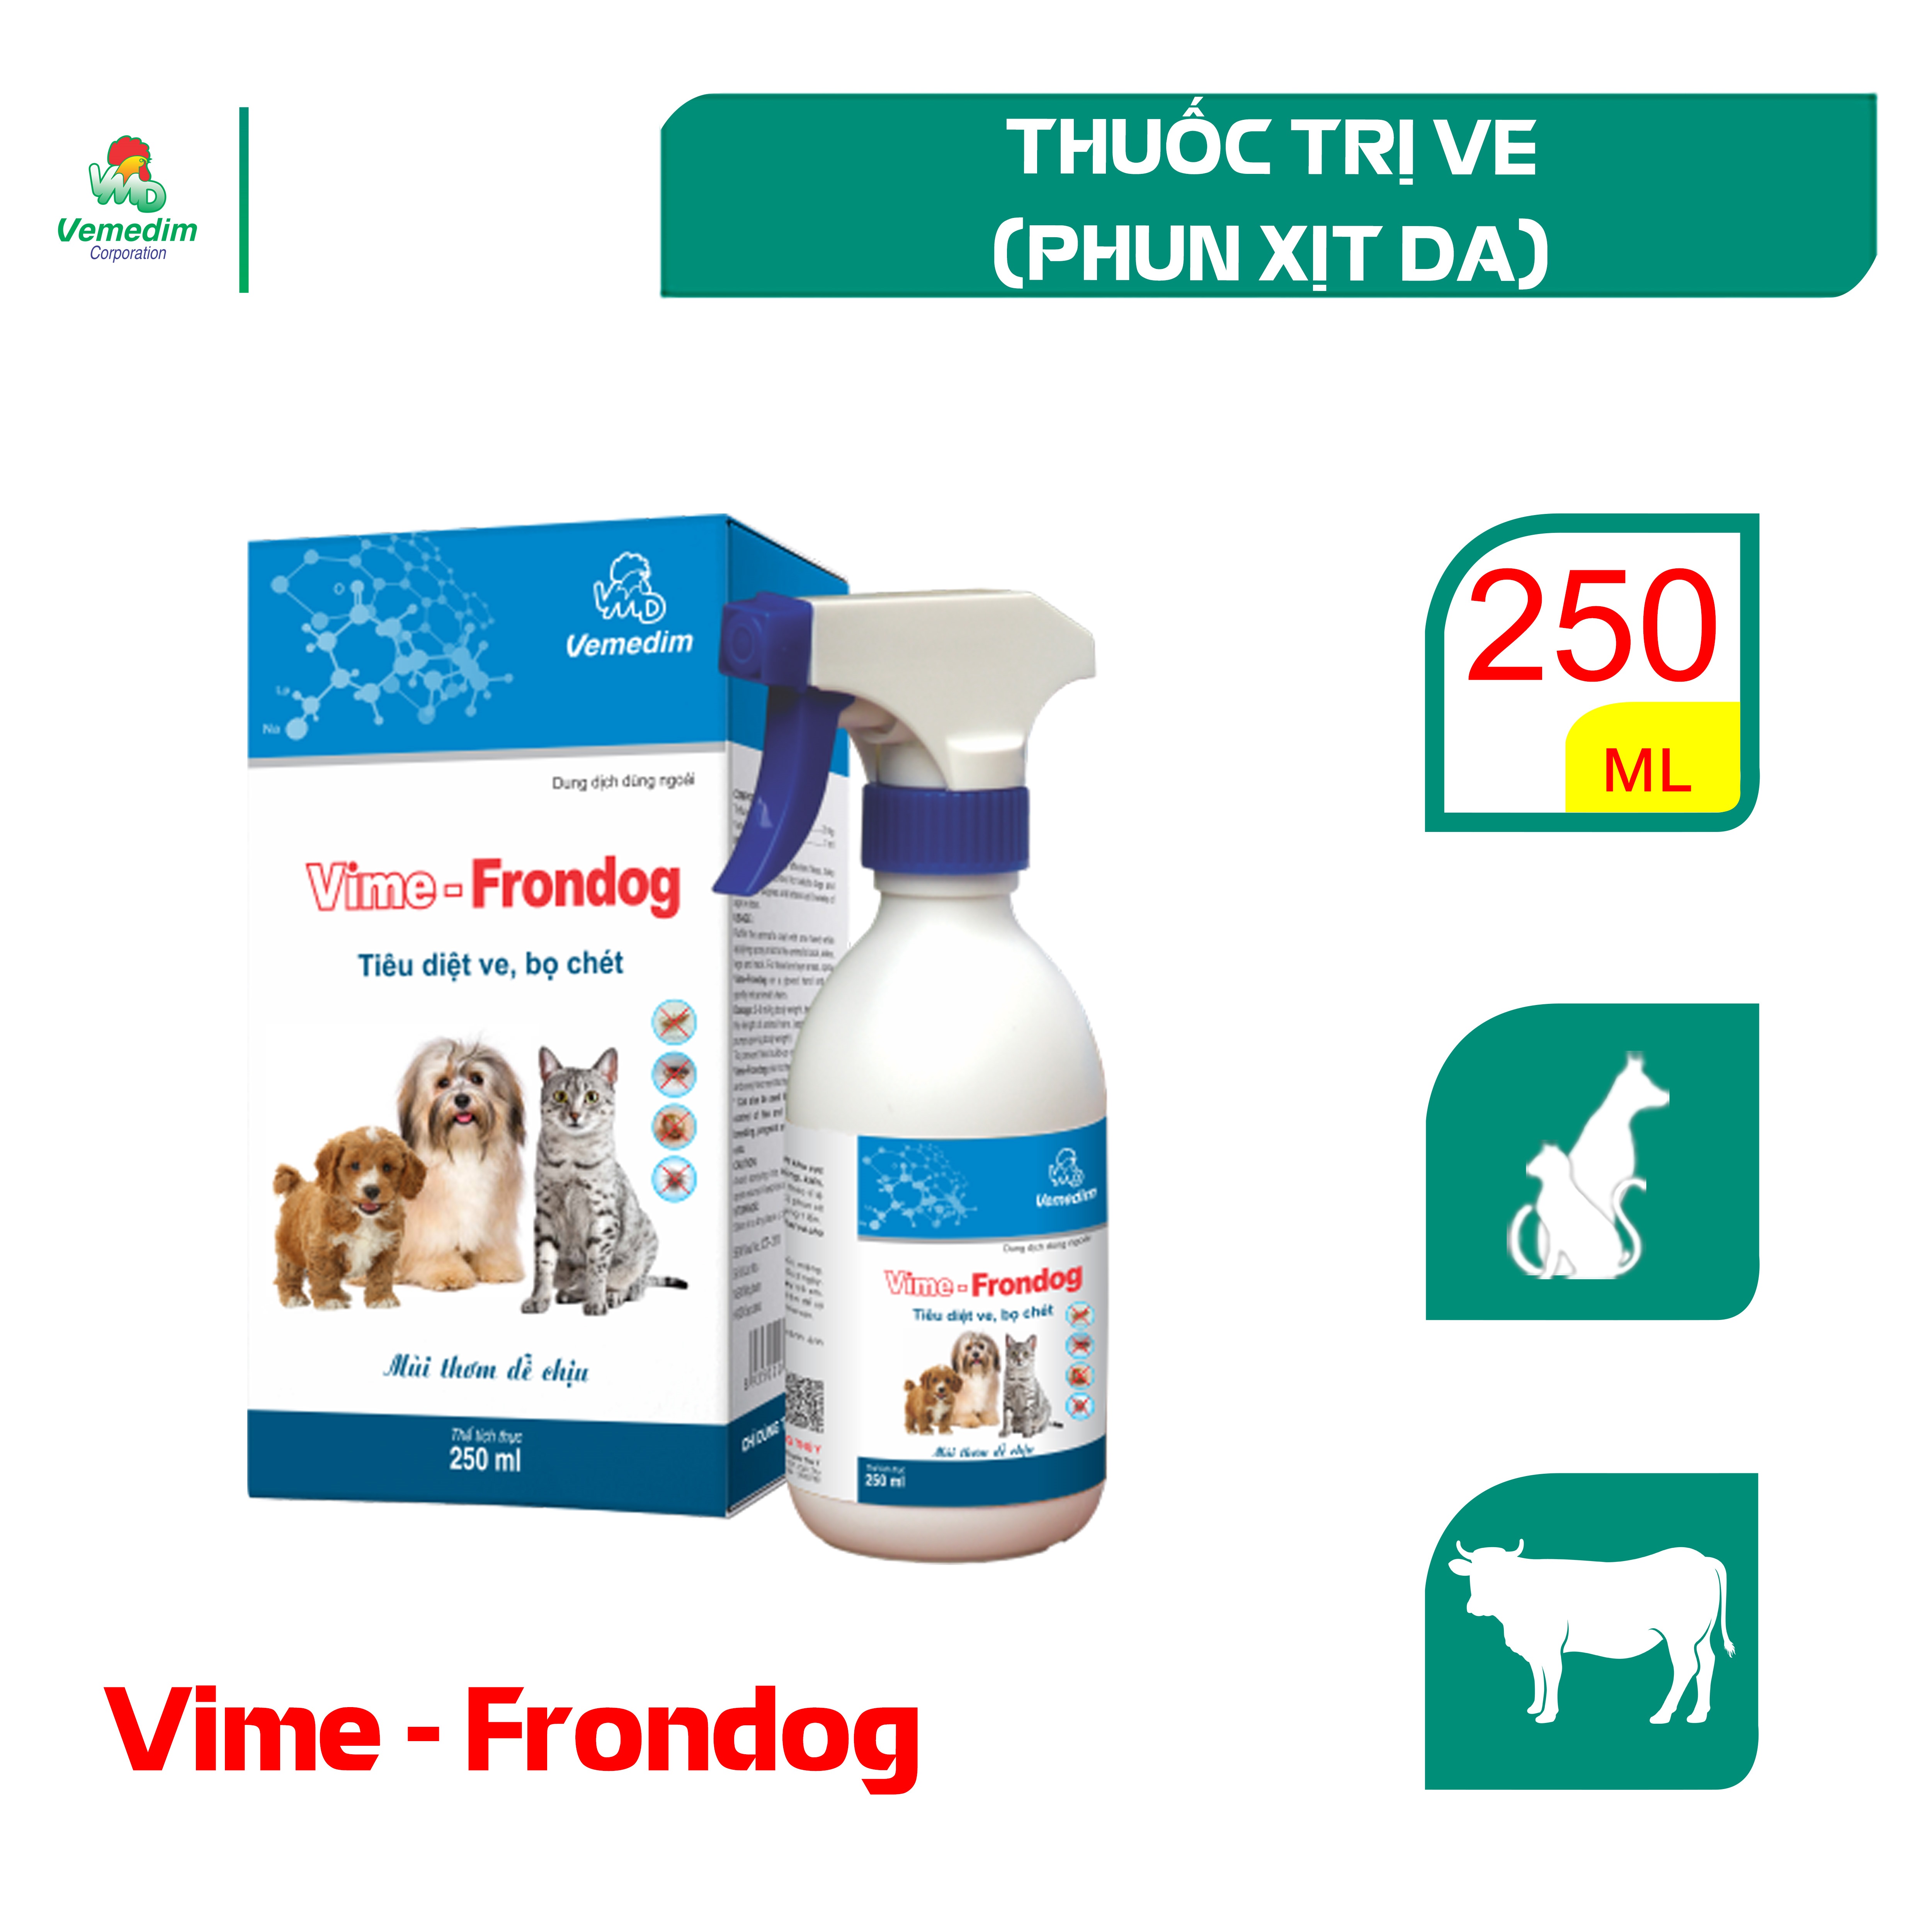 Vemedim Vime Frondog phòng trị ve, rận, bọ chét cho chó mèo, chai xịt dễ sử dụng, chai 250ml